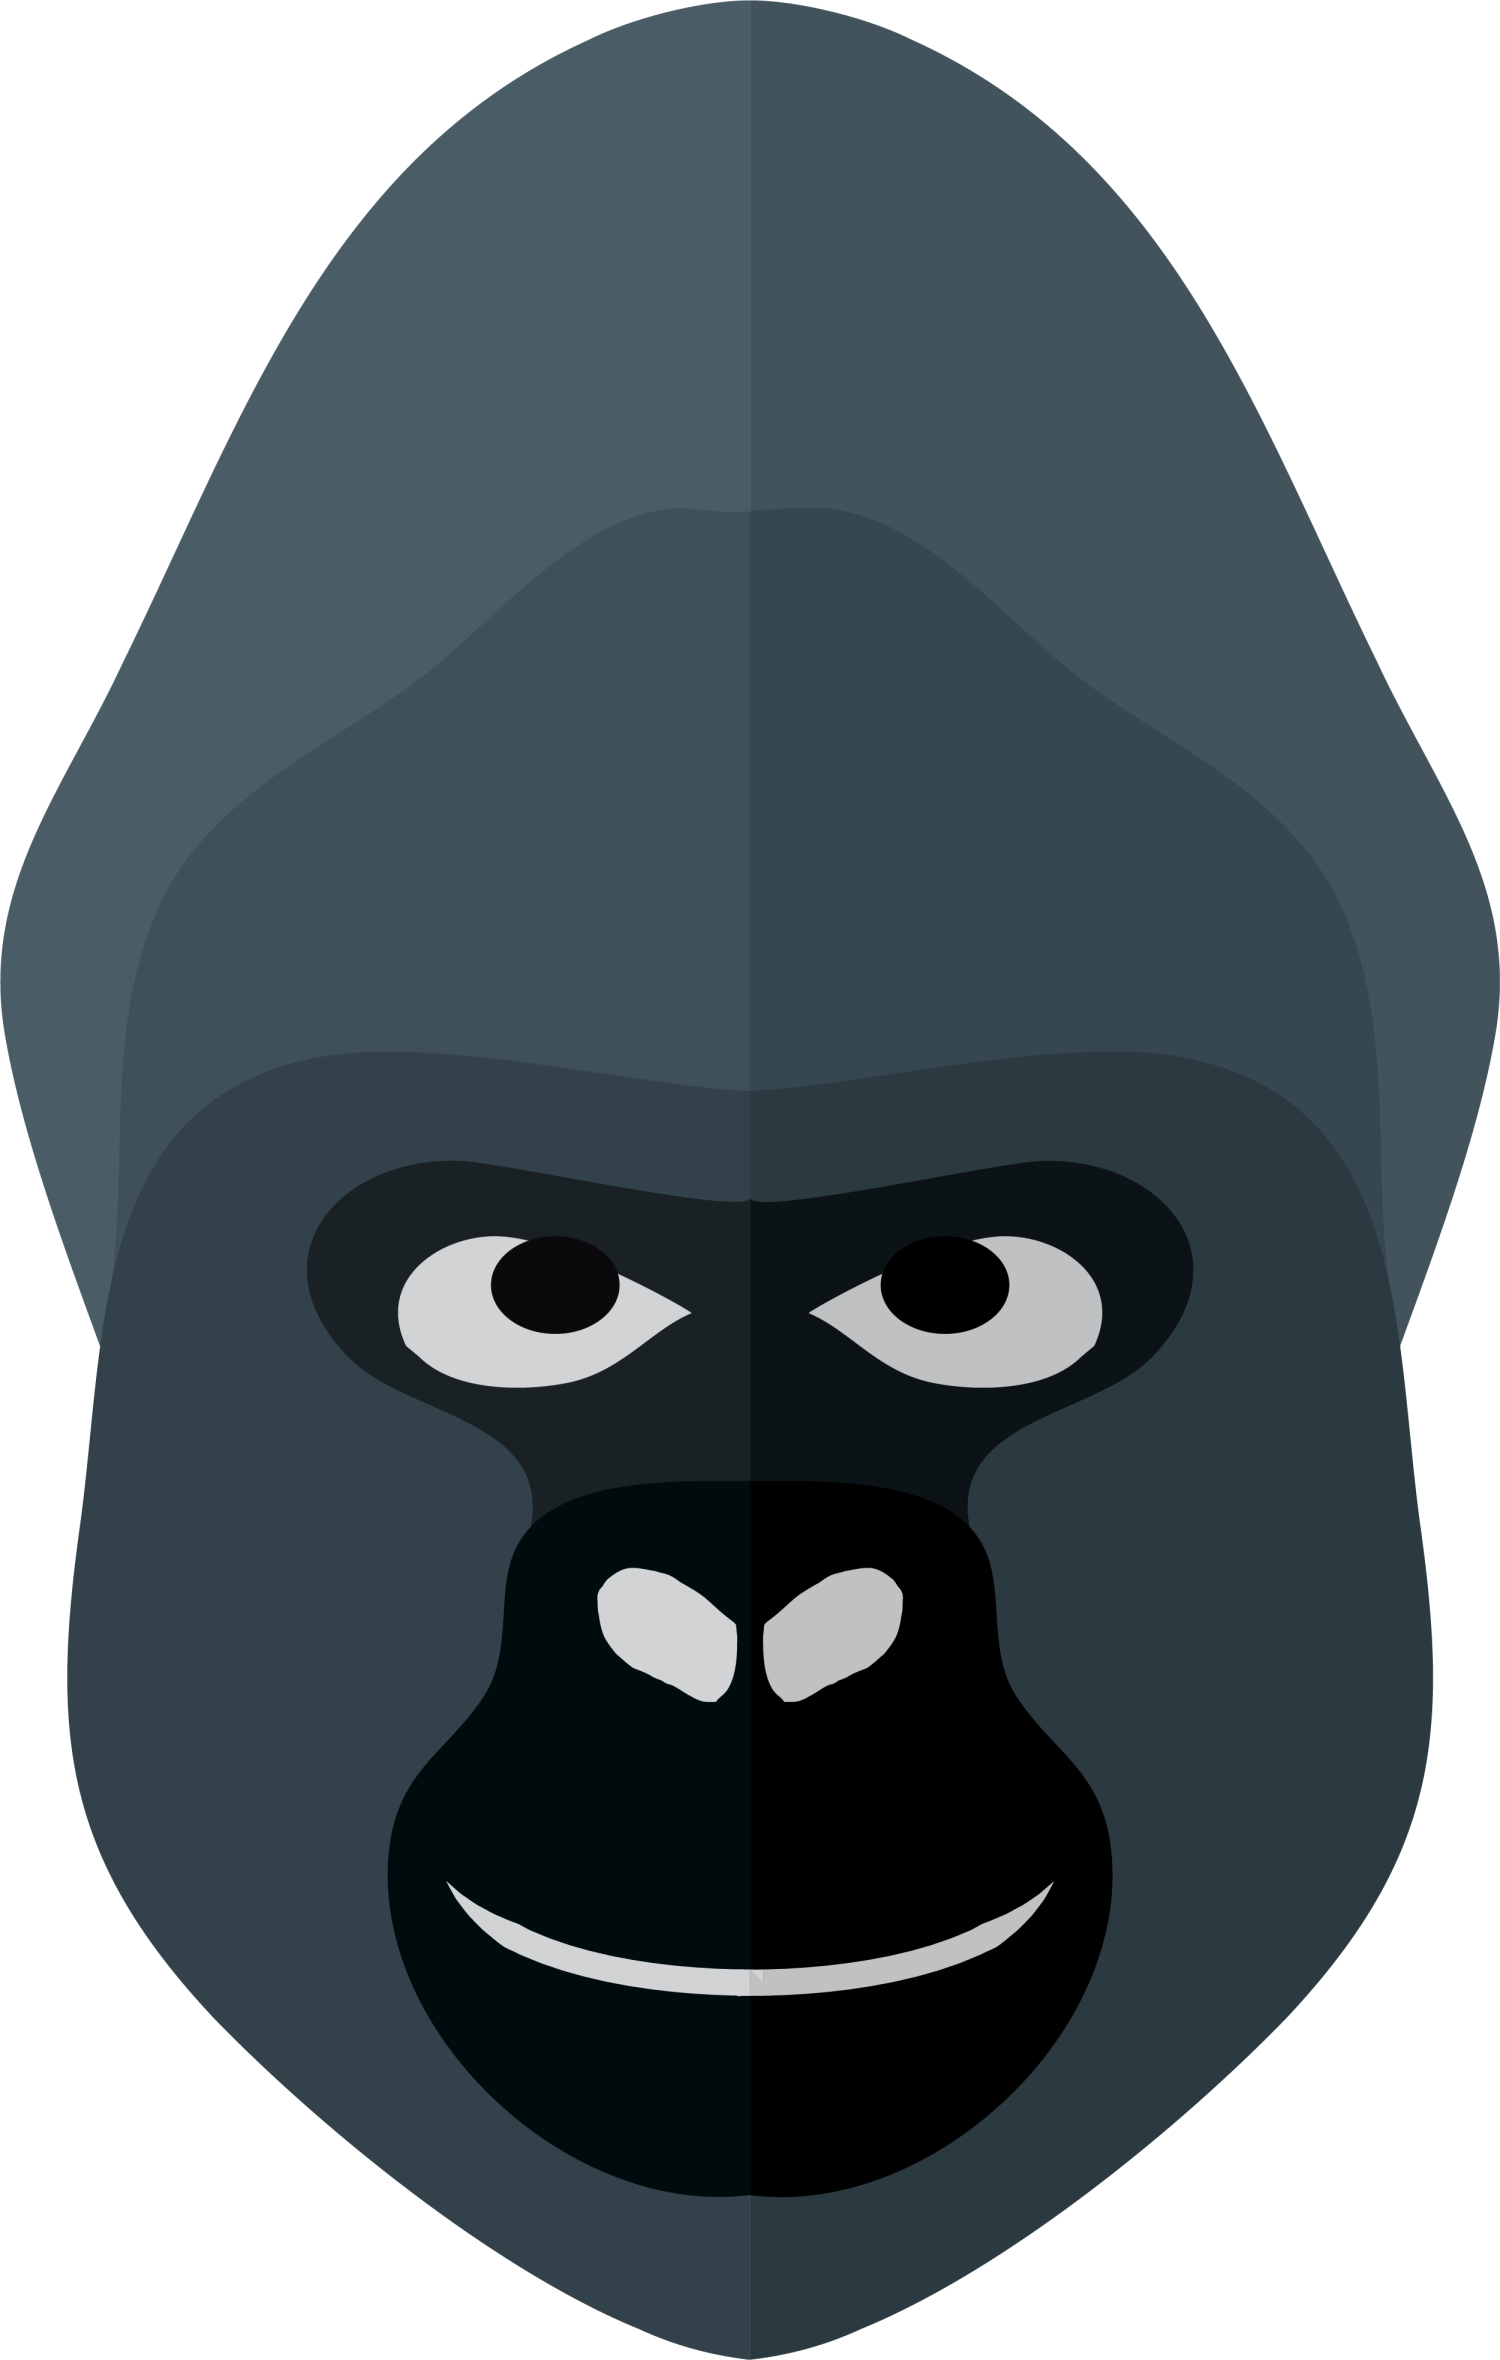 Gorilla Orangutan Cartoon Clip Art - Gorilla Orangutan Cartoon Clip Art (1500x2360)